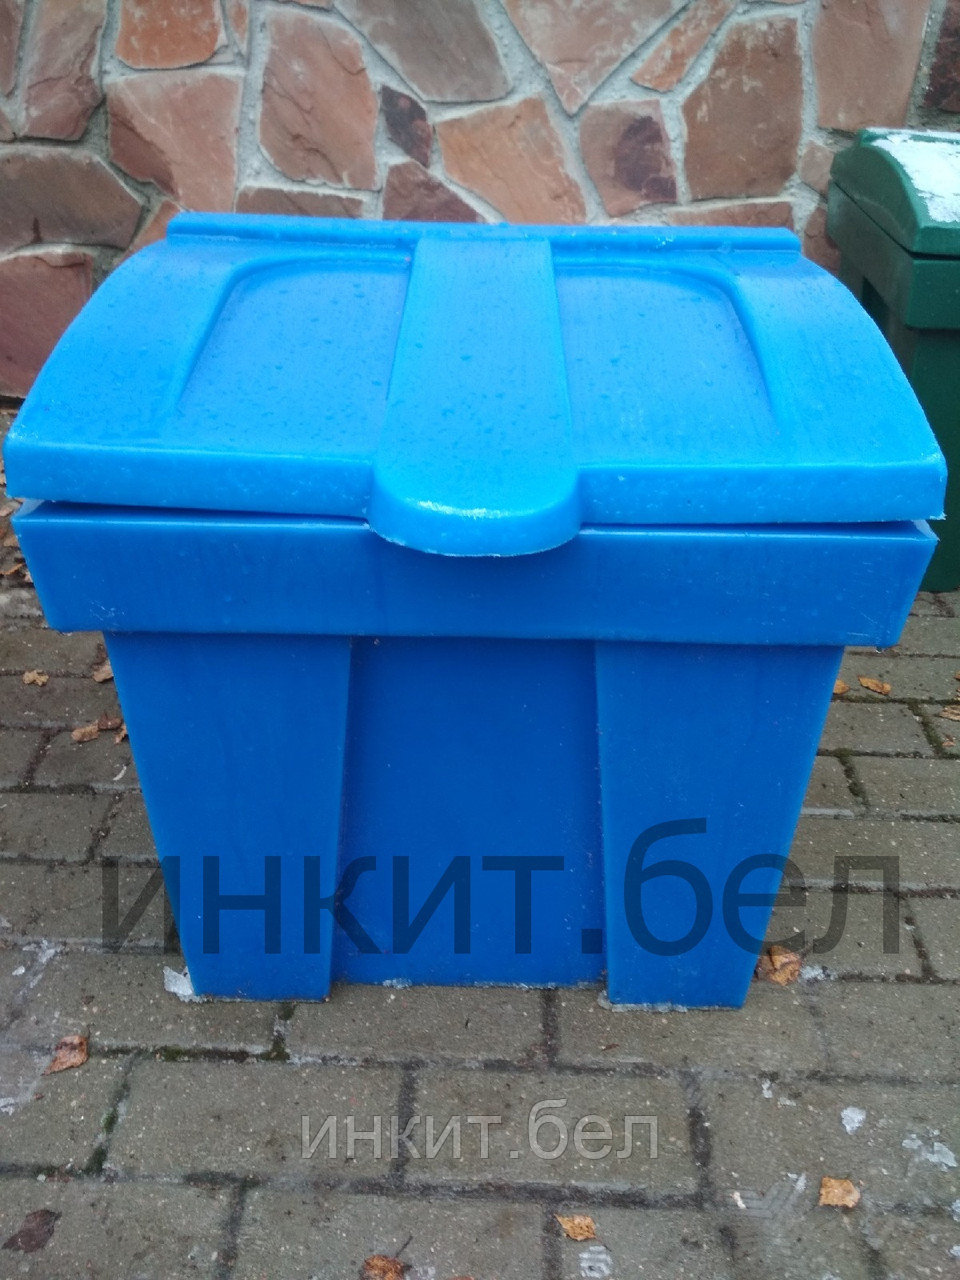 Пластиковый ящик для песка  и соли 150 литров синий.  Цена с НДС